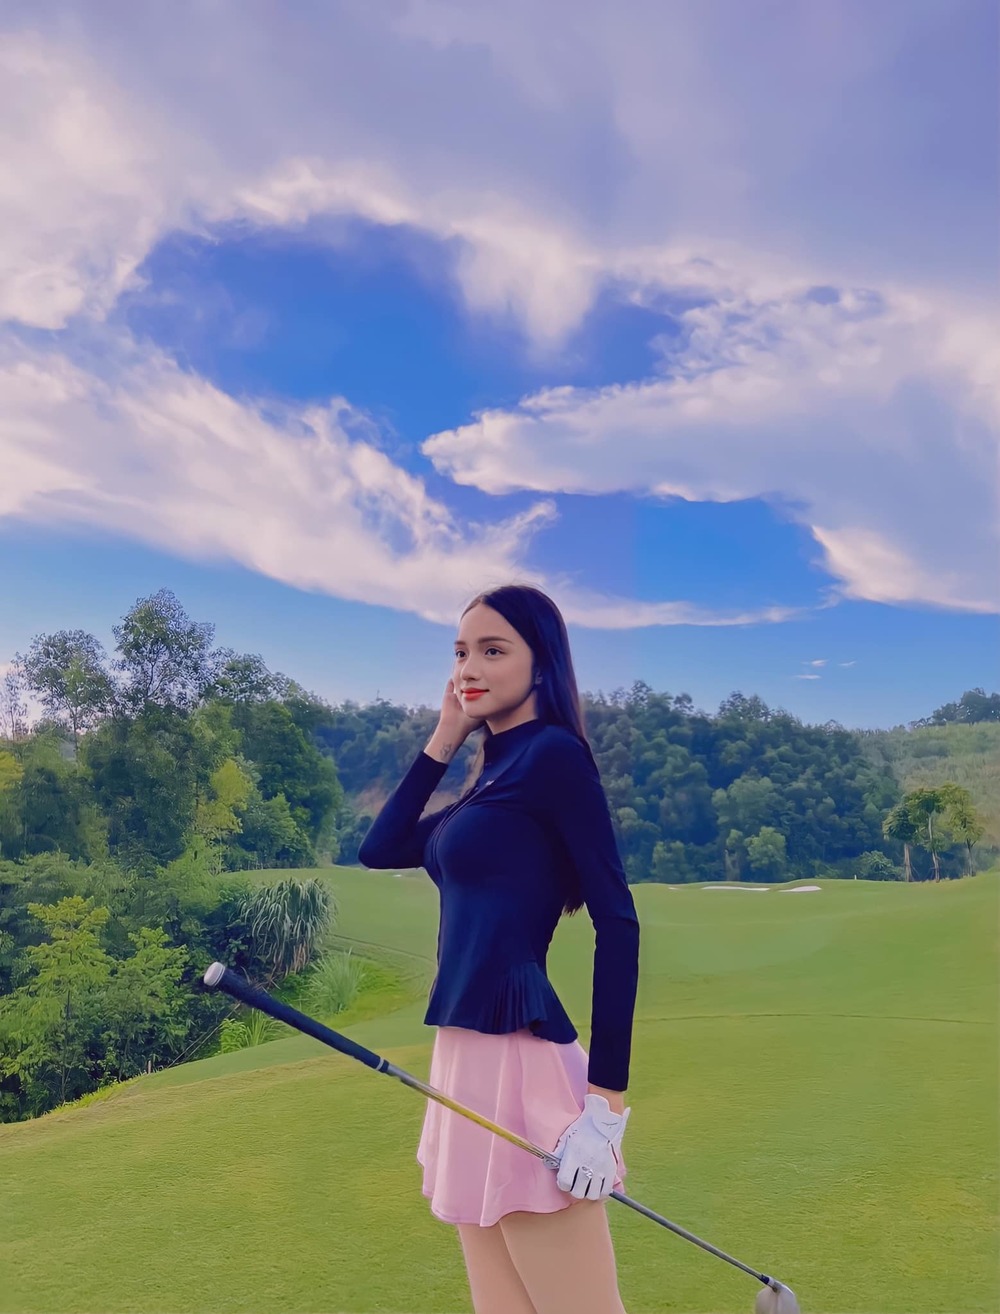  
Hương Giang "gây bão" khi trở lại mạng xã hội với hình ảnh đi đánh golf. Diện bộ đồ thể thao đơn giản nhưng sắc vóc của cô nàng vẫn "đỉnh của chóp". (Ảnh: FBNV)